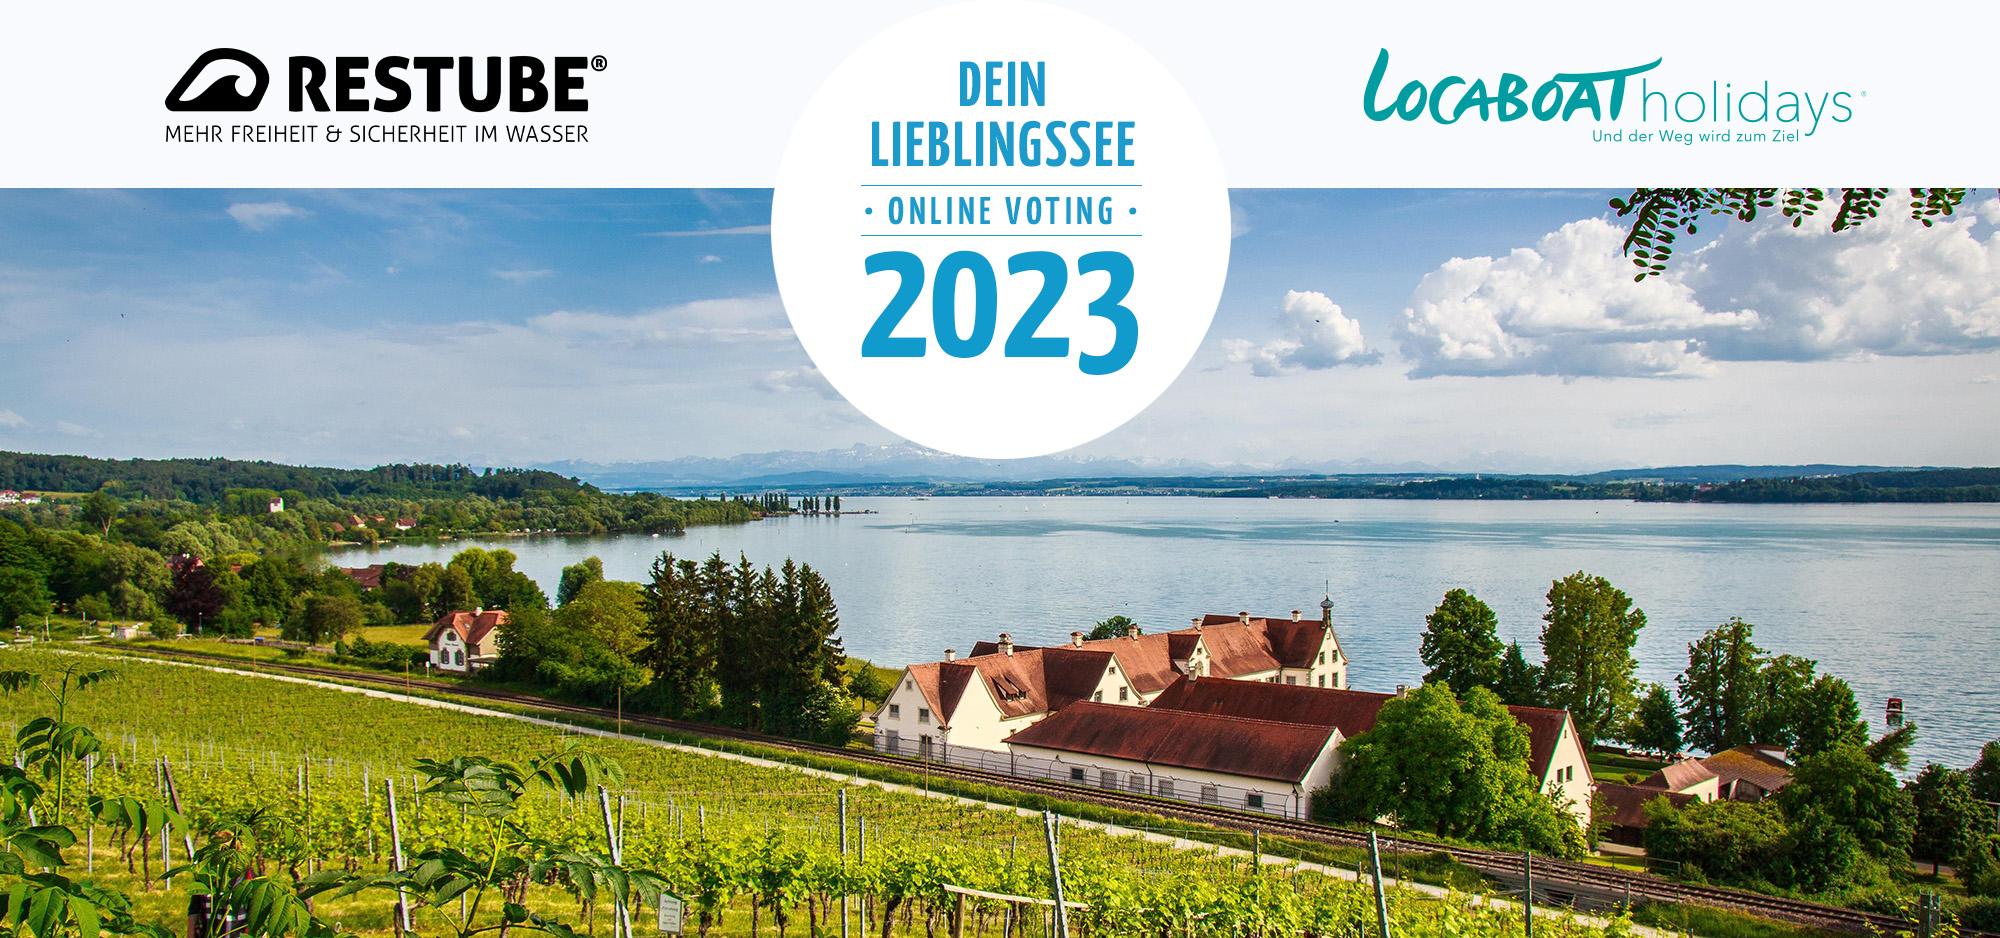 Der Bodensee – auch 2023 Deutschlands „Lieblingssee“